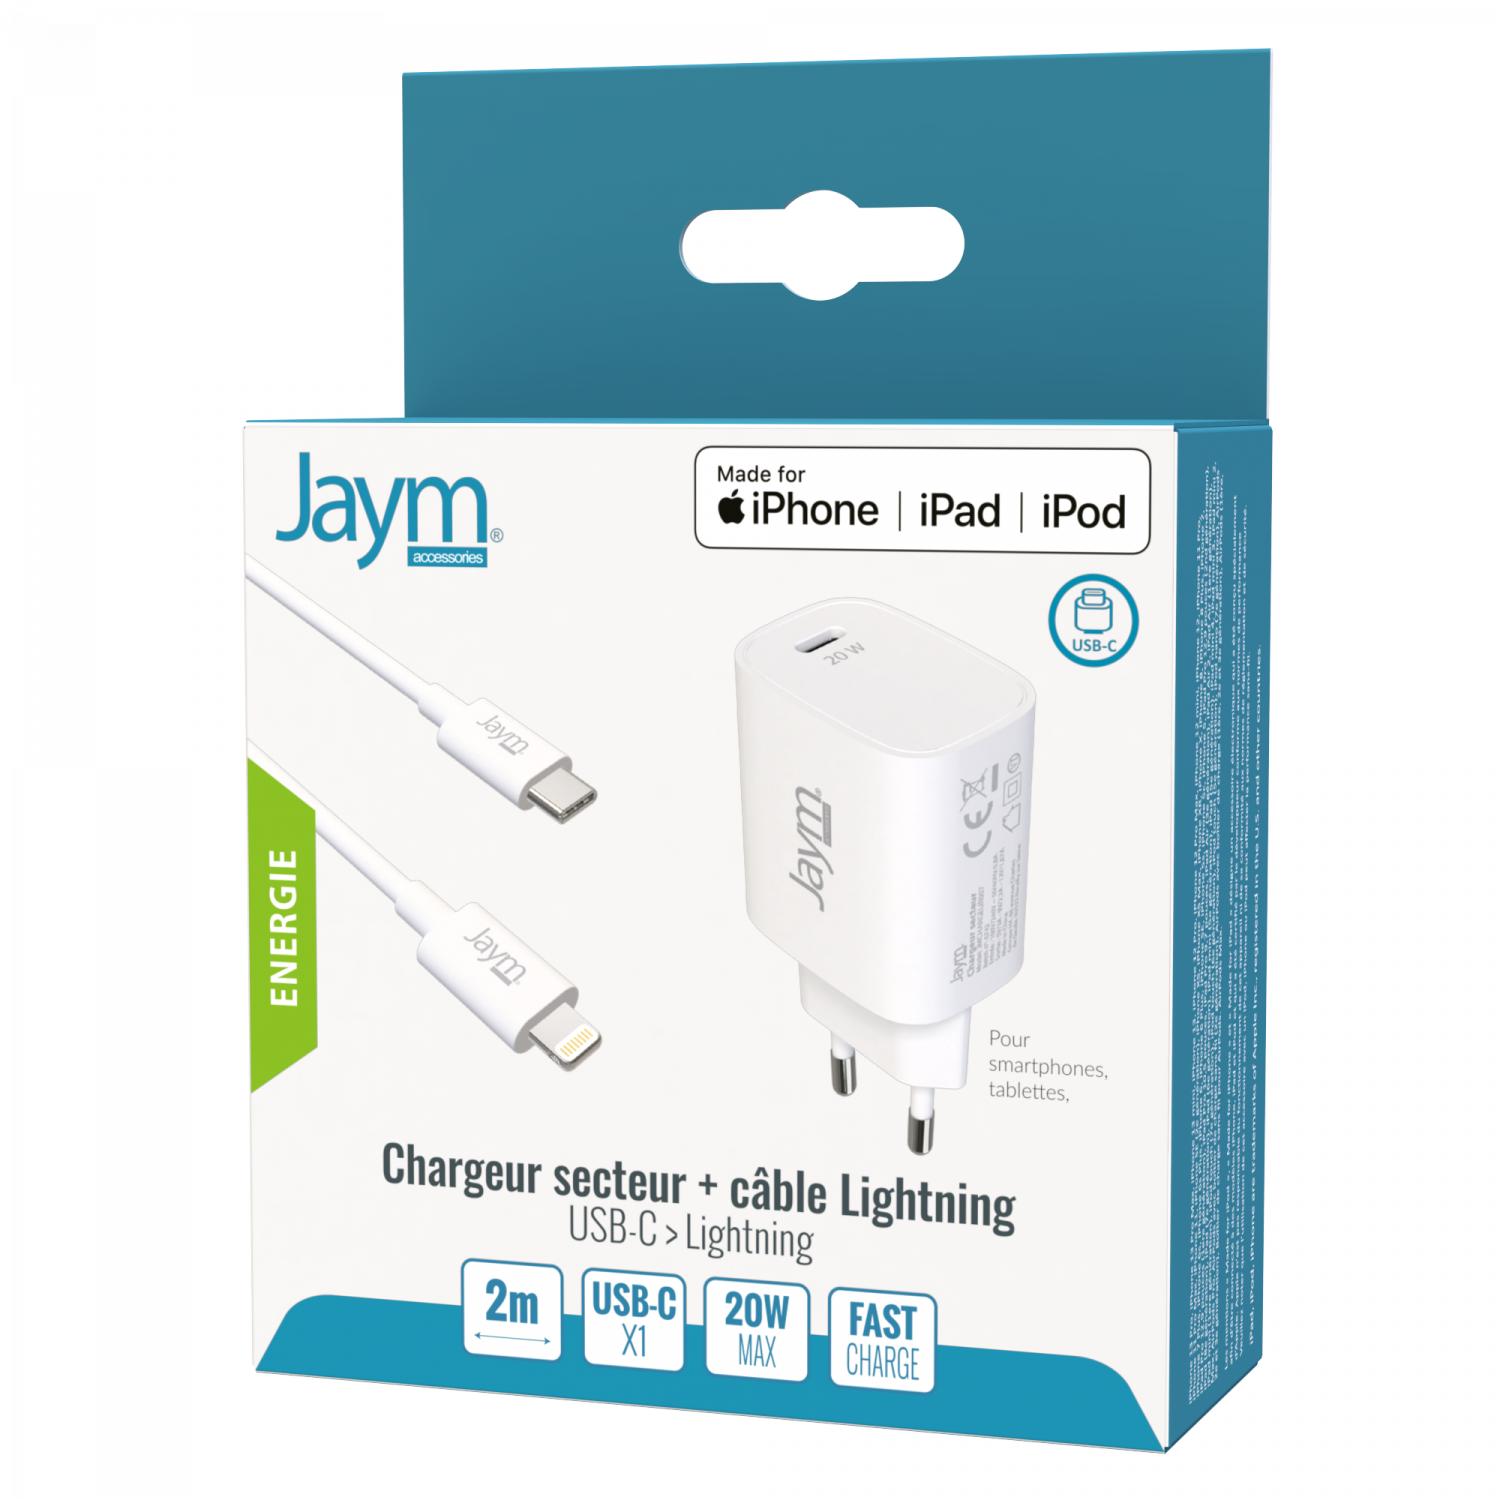 Chargeurs - Lightning - Essentiels pour la recharge - Accessoires pour iPad  - Apple (CA)